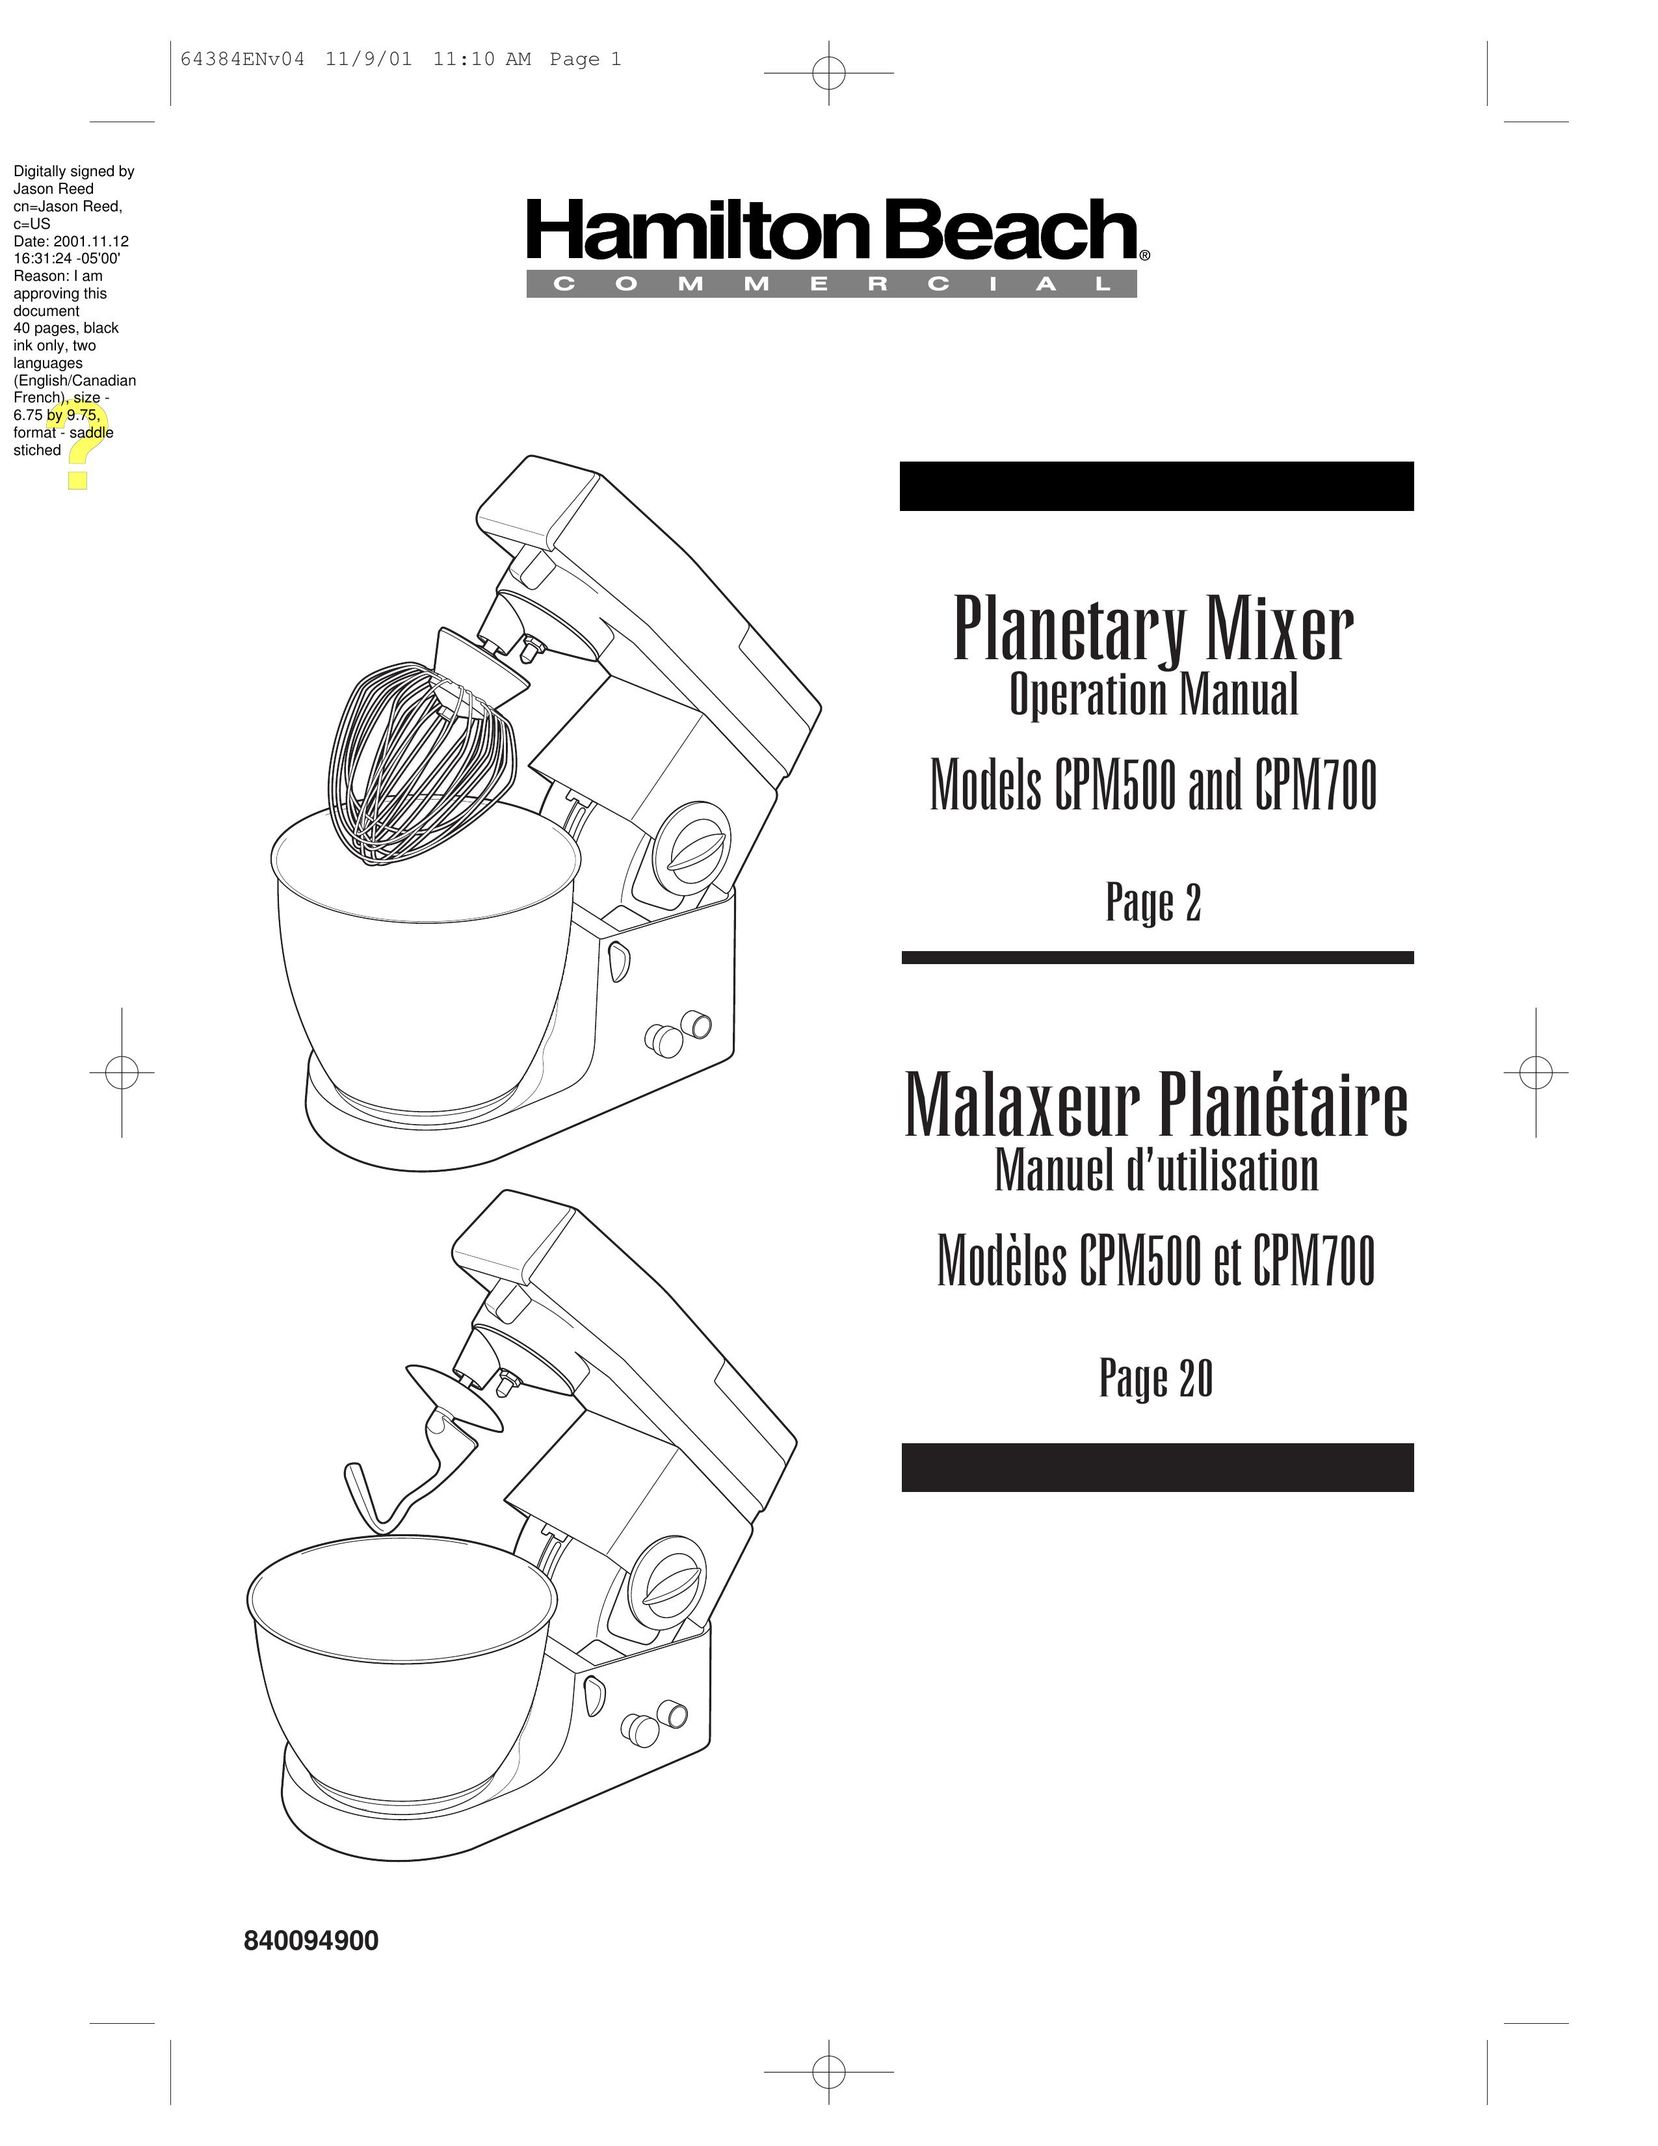 Hamilton Beach CPM700 Mixer User Manual